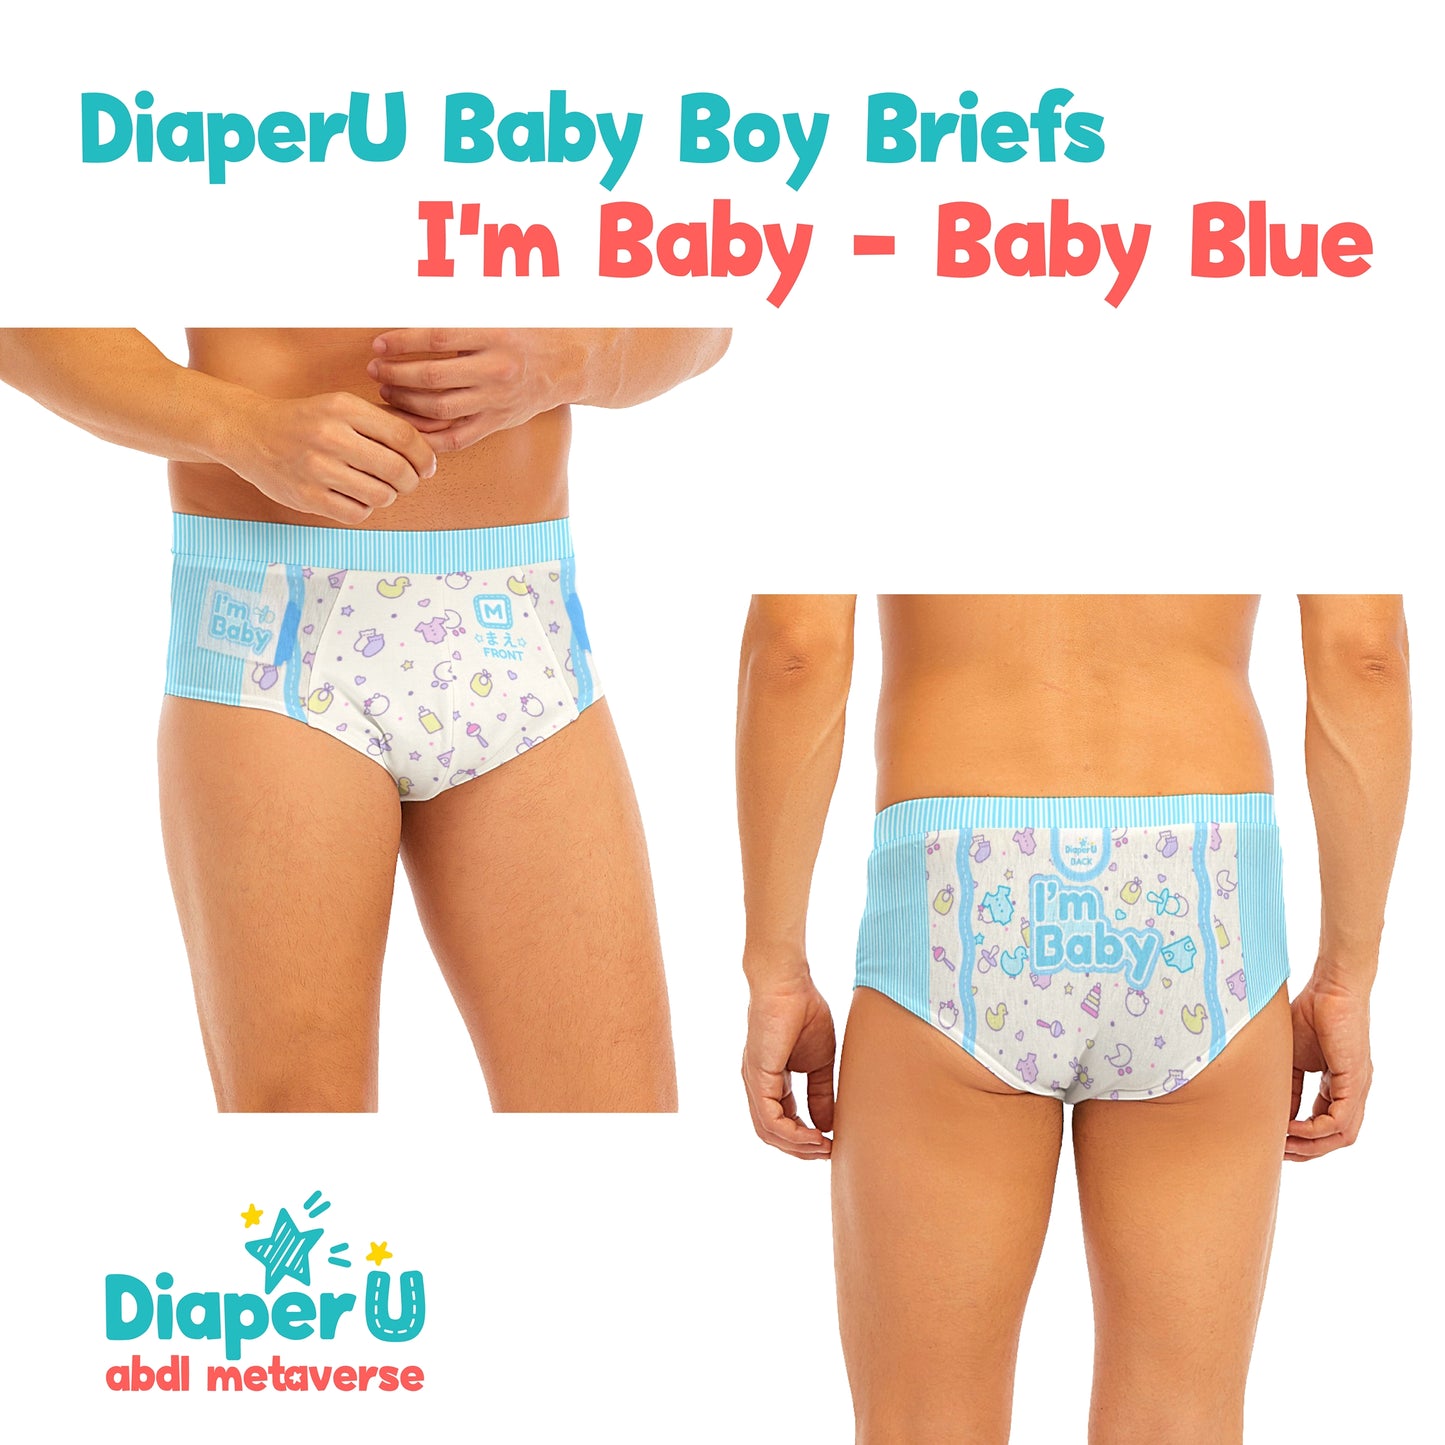 Baby Boy Briefs - I'm Baby (Baby Blue)